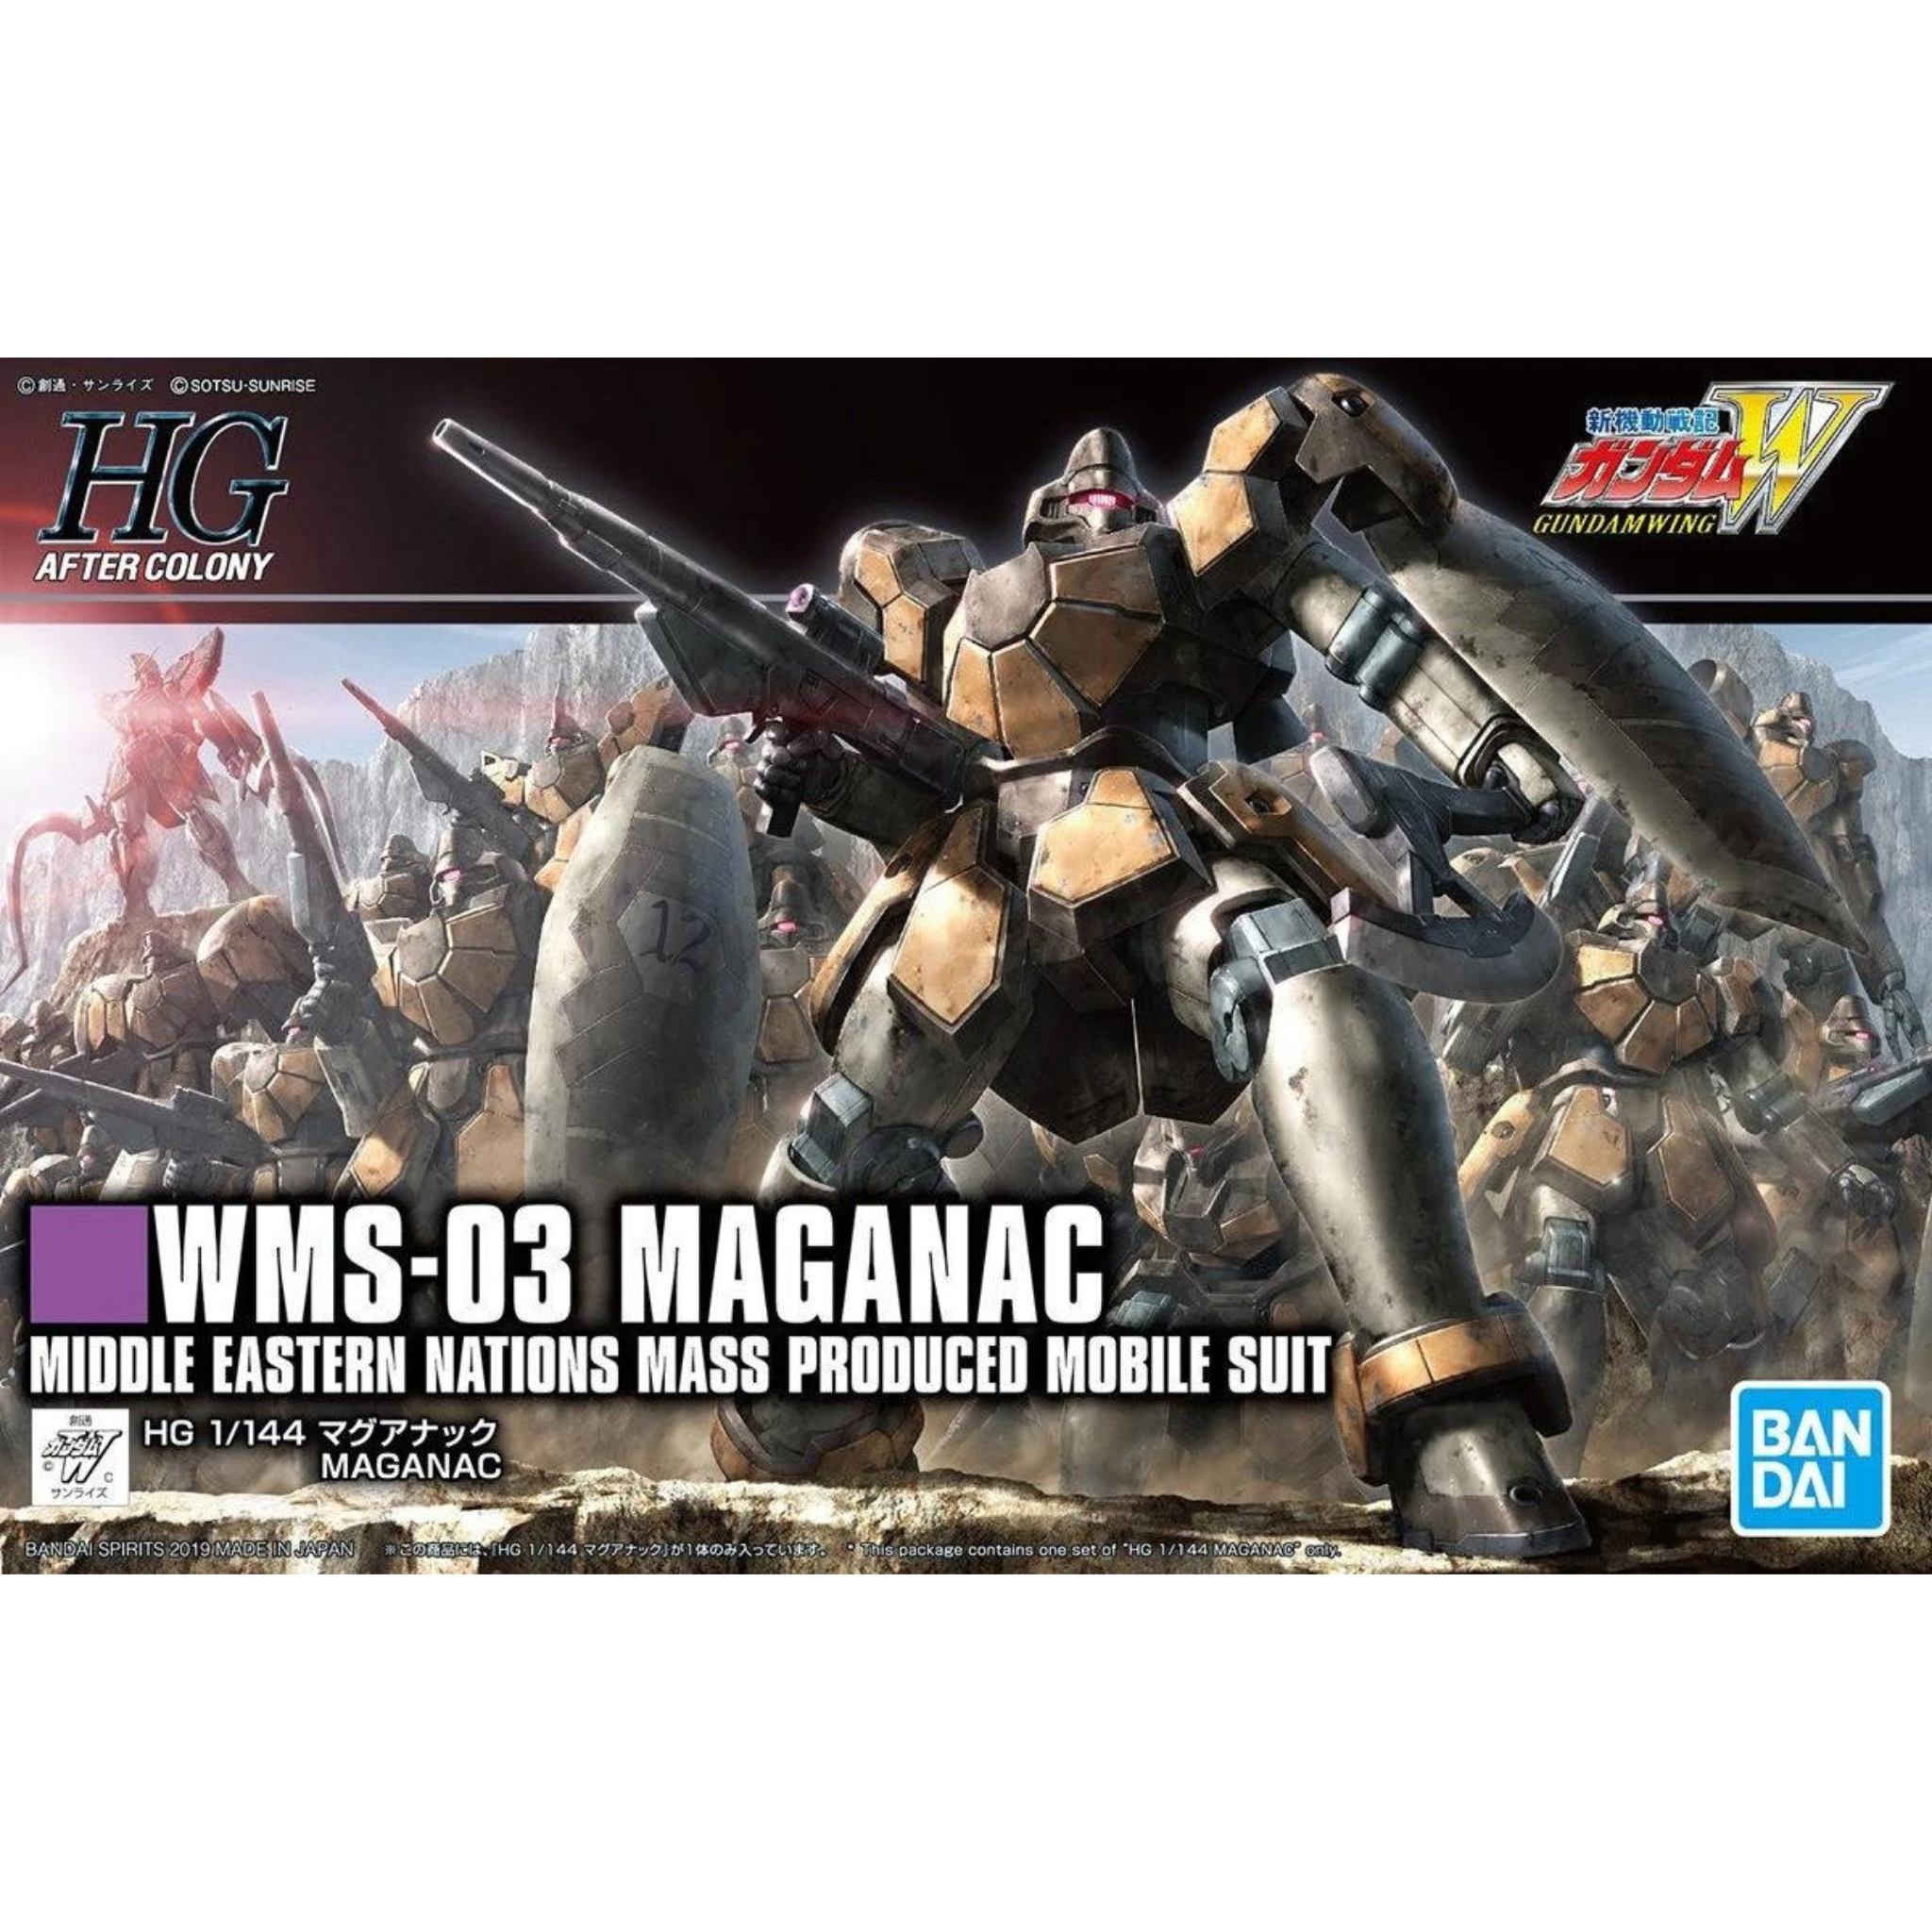 HGAC 1/144 #223 WMS-03 Maganac #5057575 by Bandai